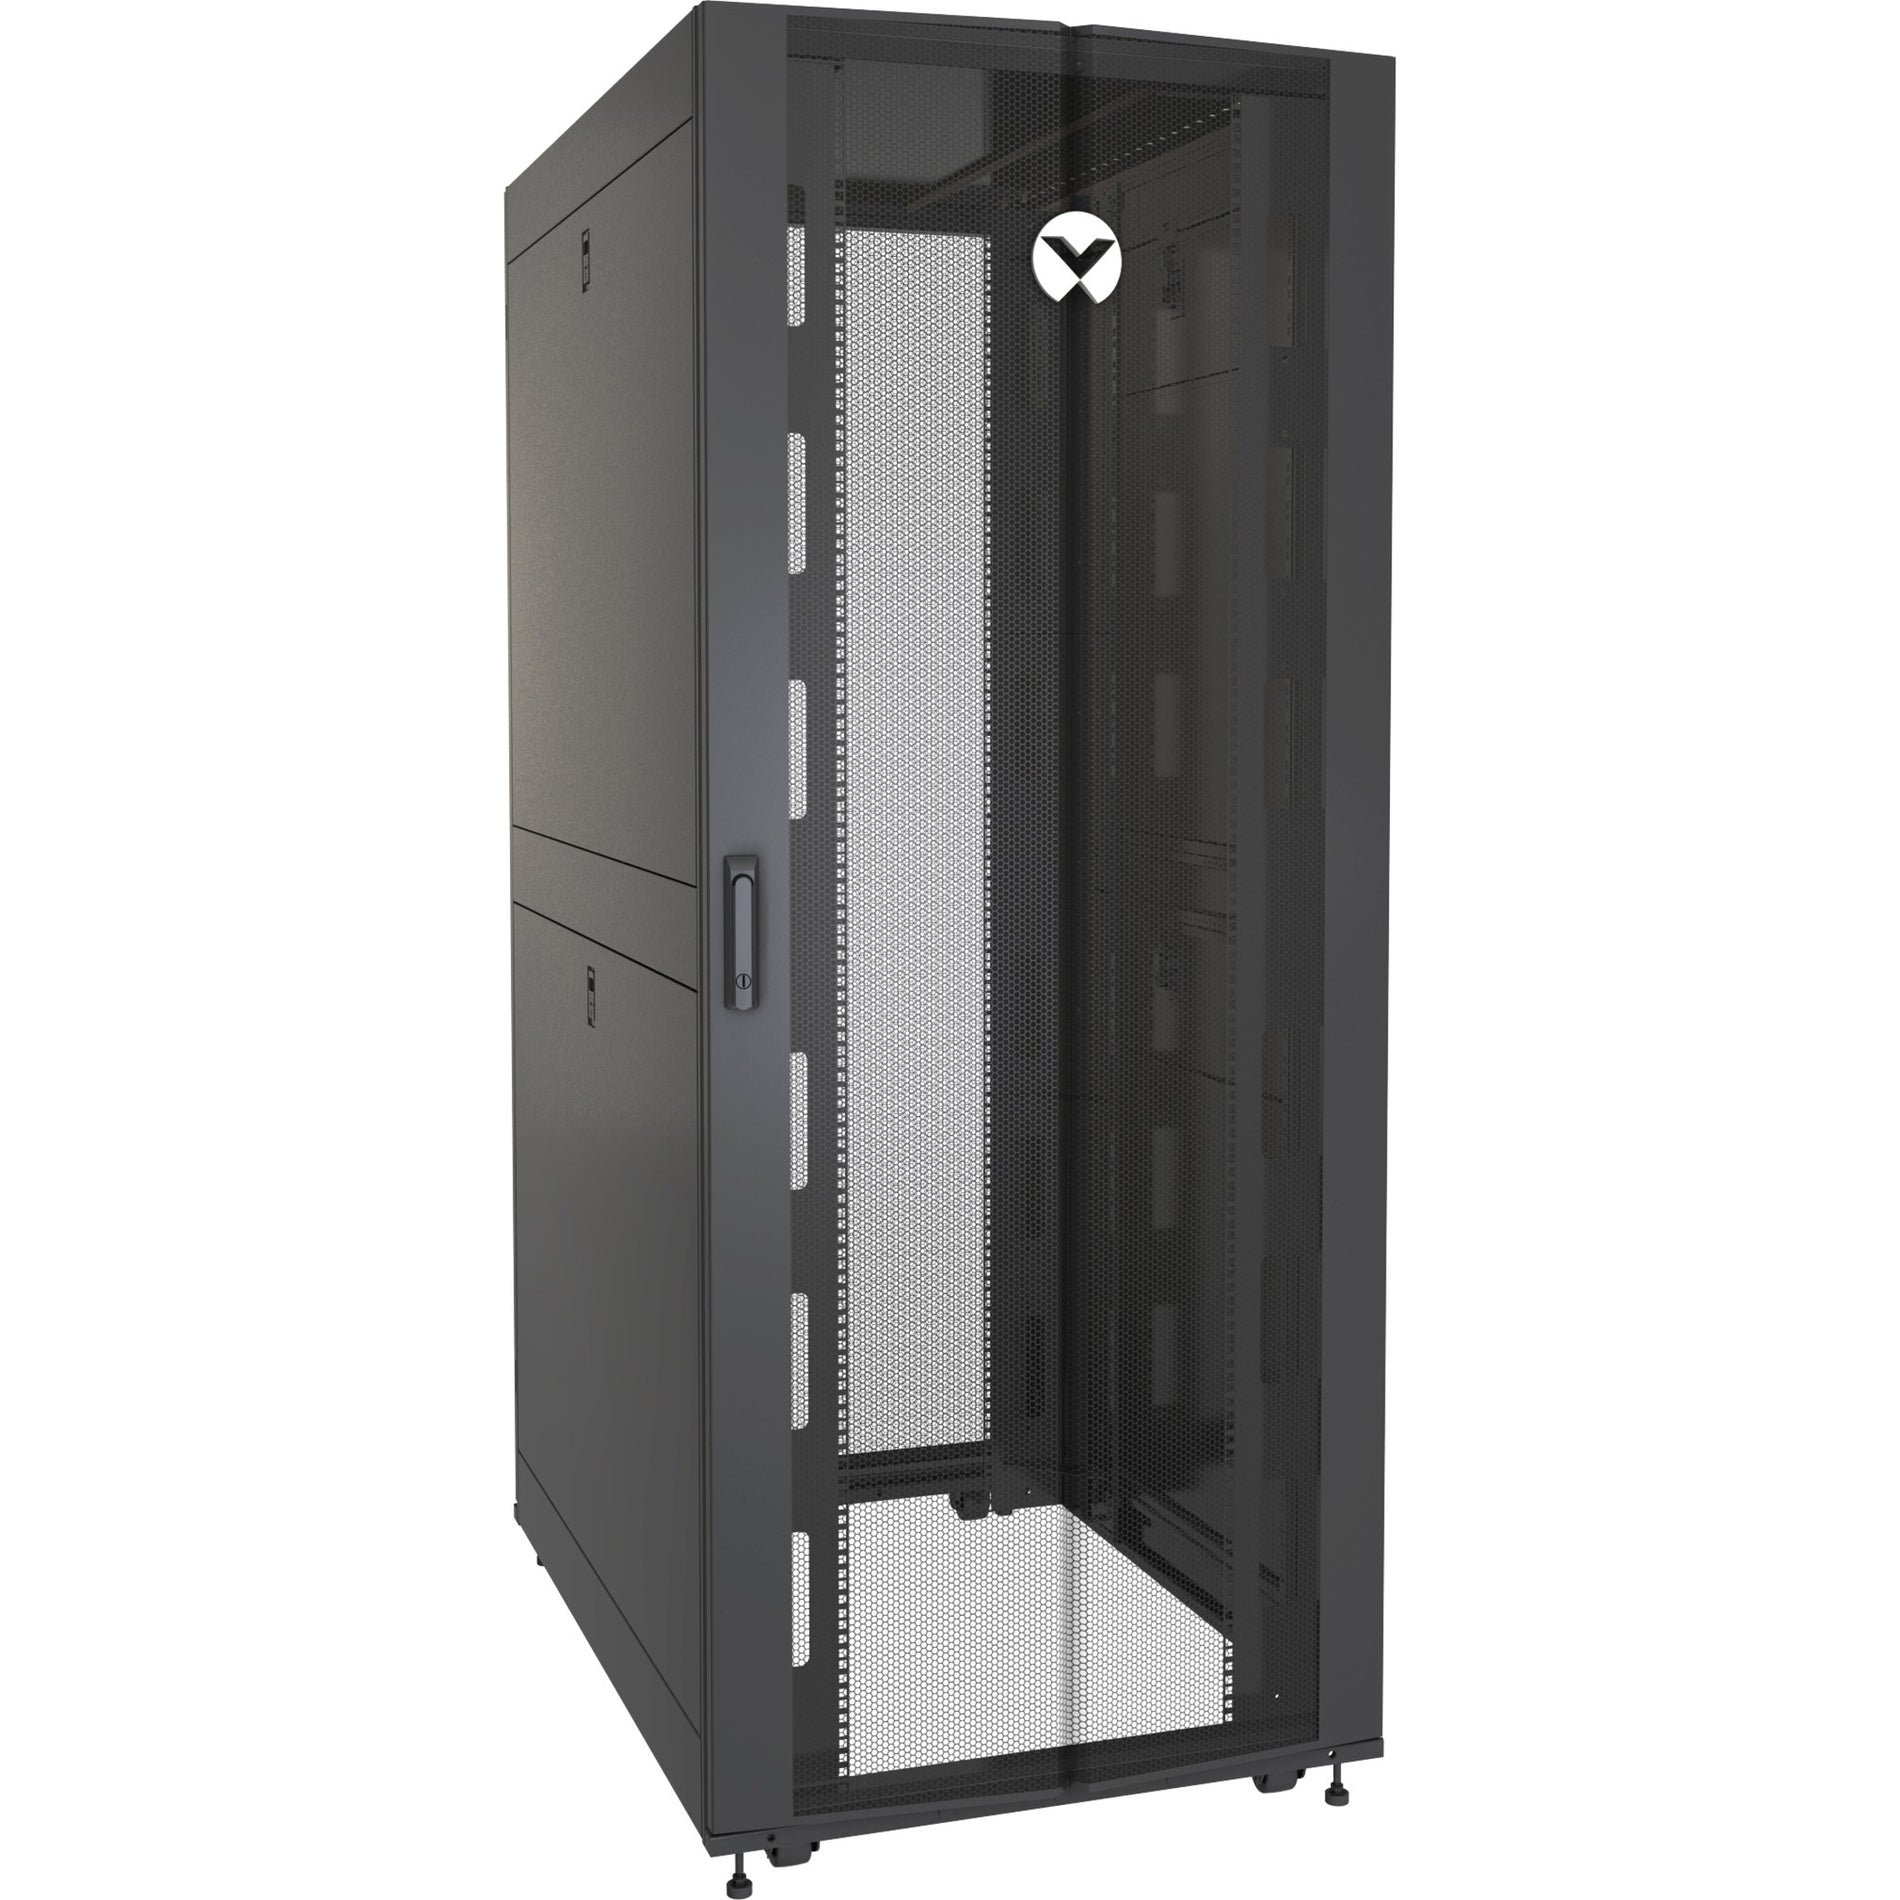 VERTIV VR3307 Vertiv VR Rack - 48U Server Rack Enclosure, 600x1200mm, 19-inch Cabinet